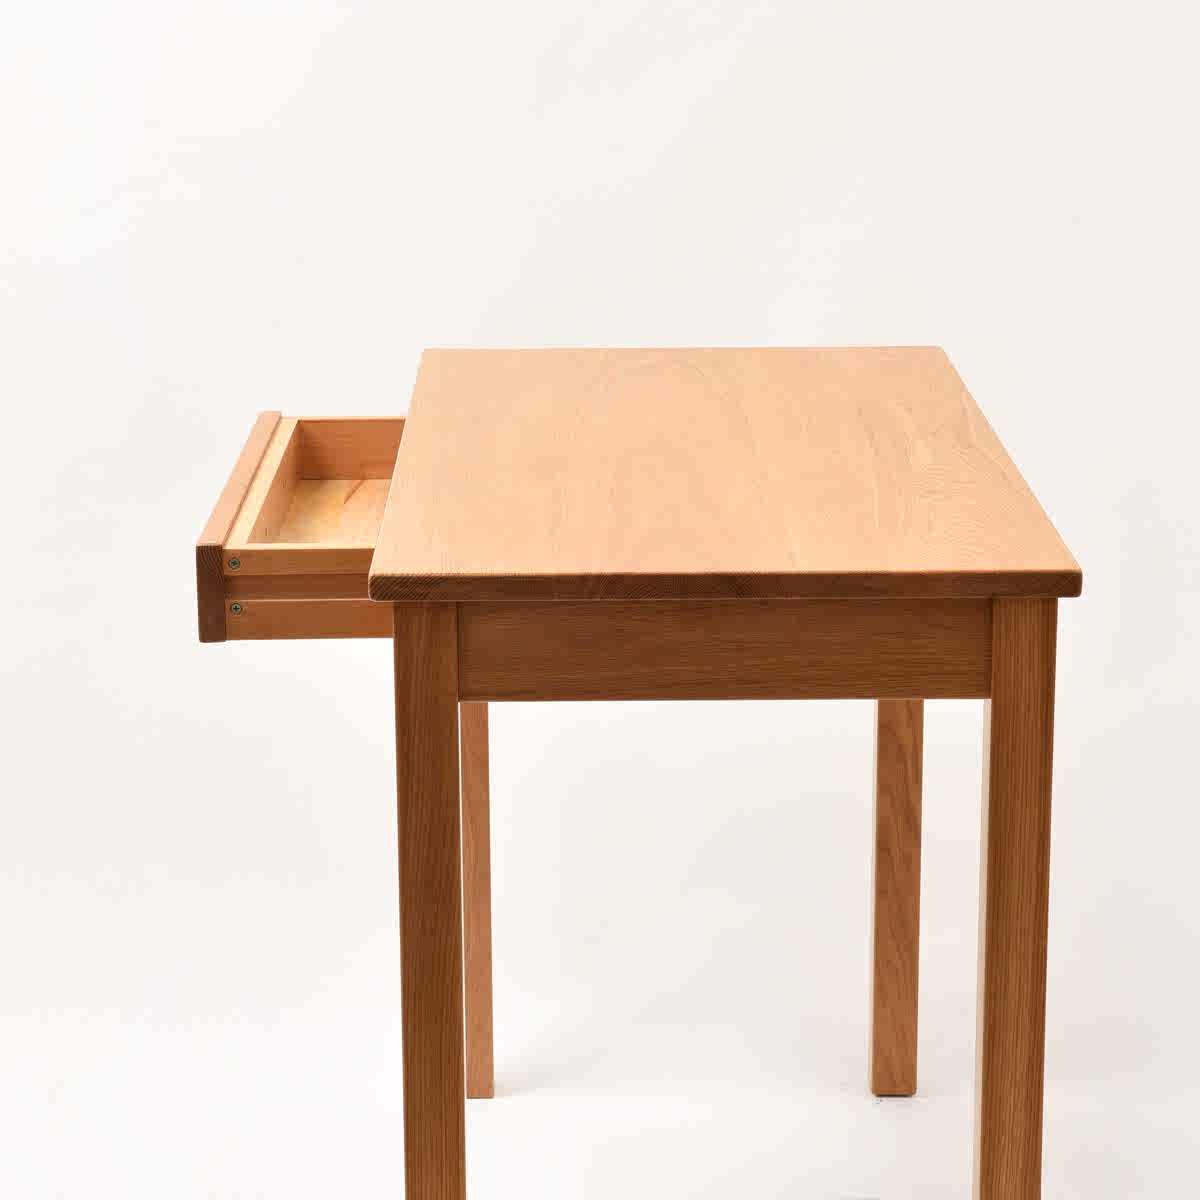 学习桌出货了 学生作业书桌 白橡木榉木实木方桌 高脚桌 山东网店